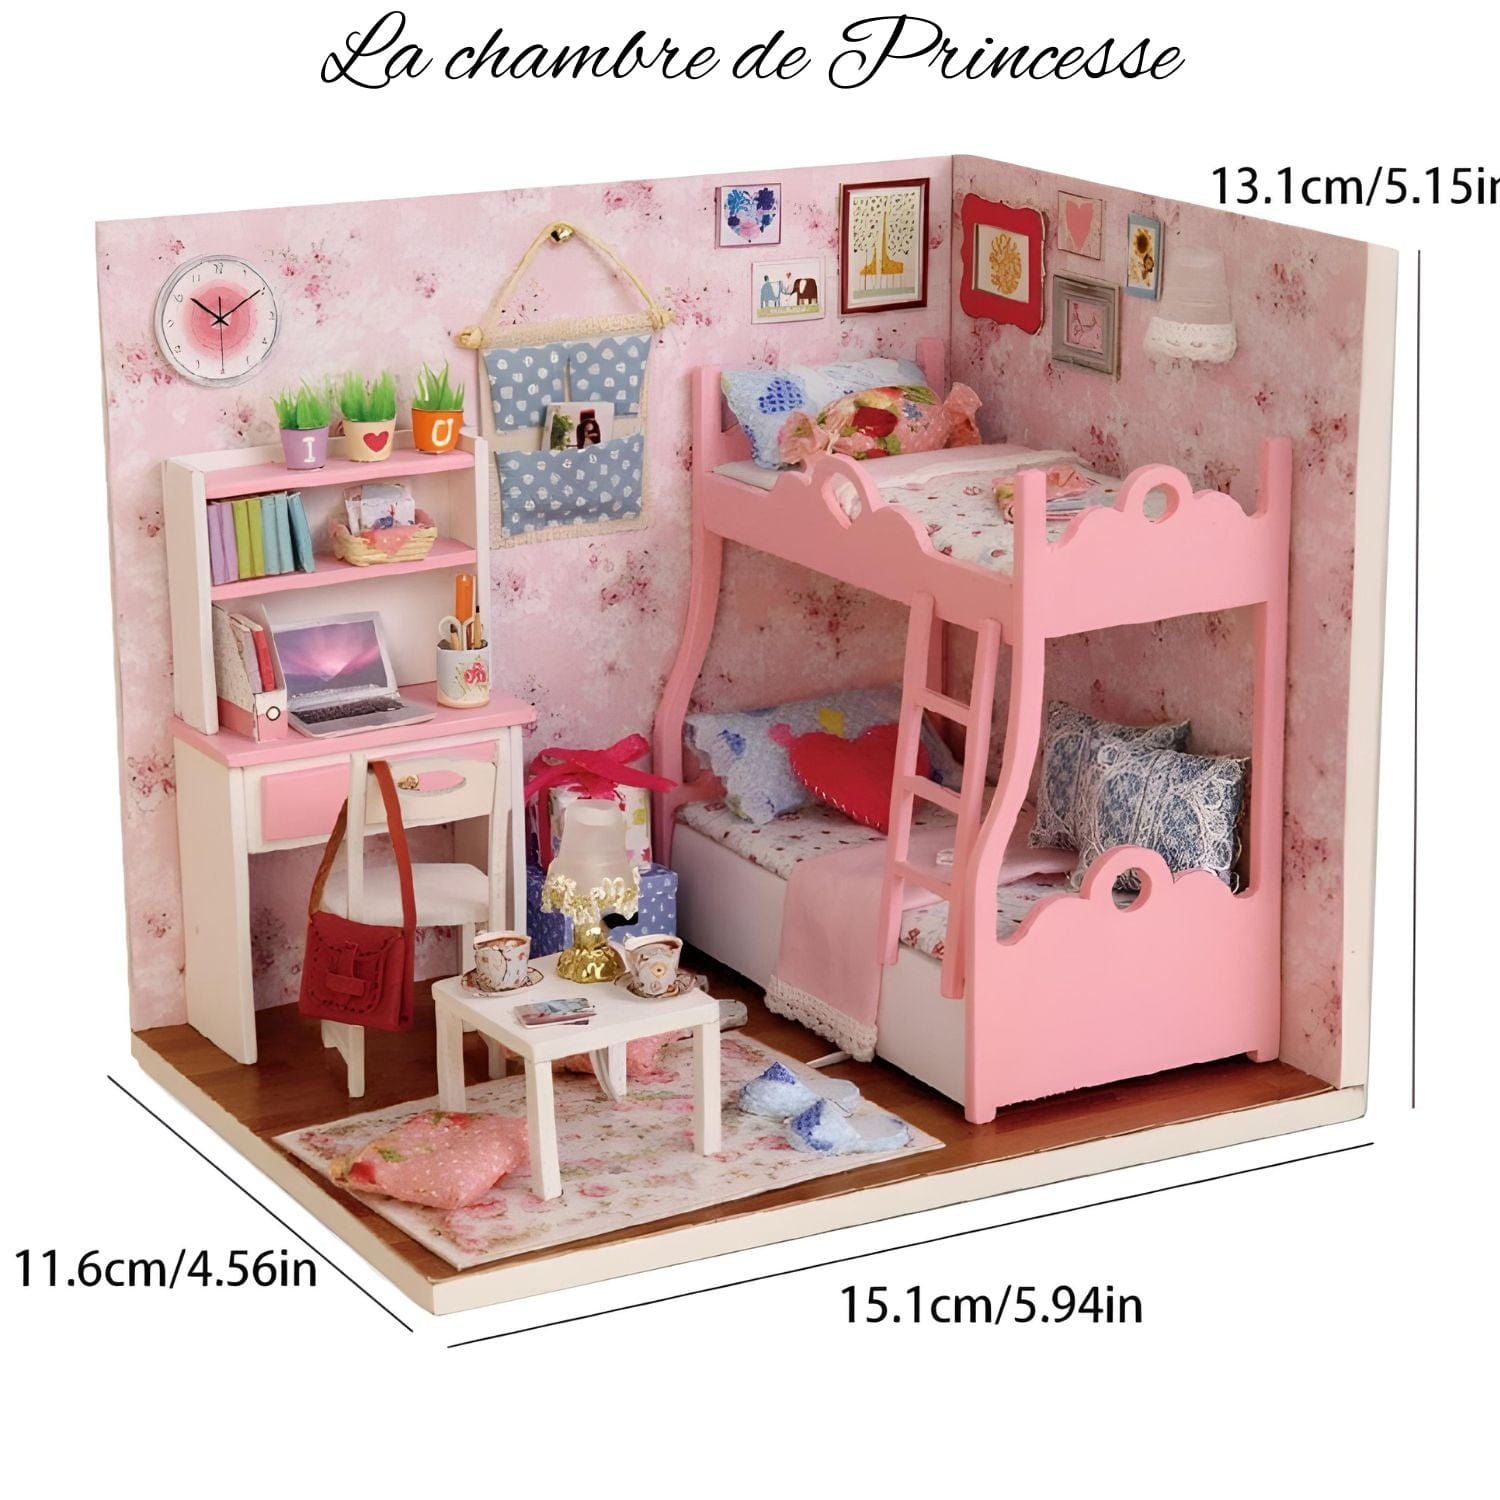 Chambre miniature Pièces d'Exceptions Maison Miniature | La chambre de Princesse